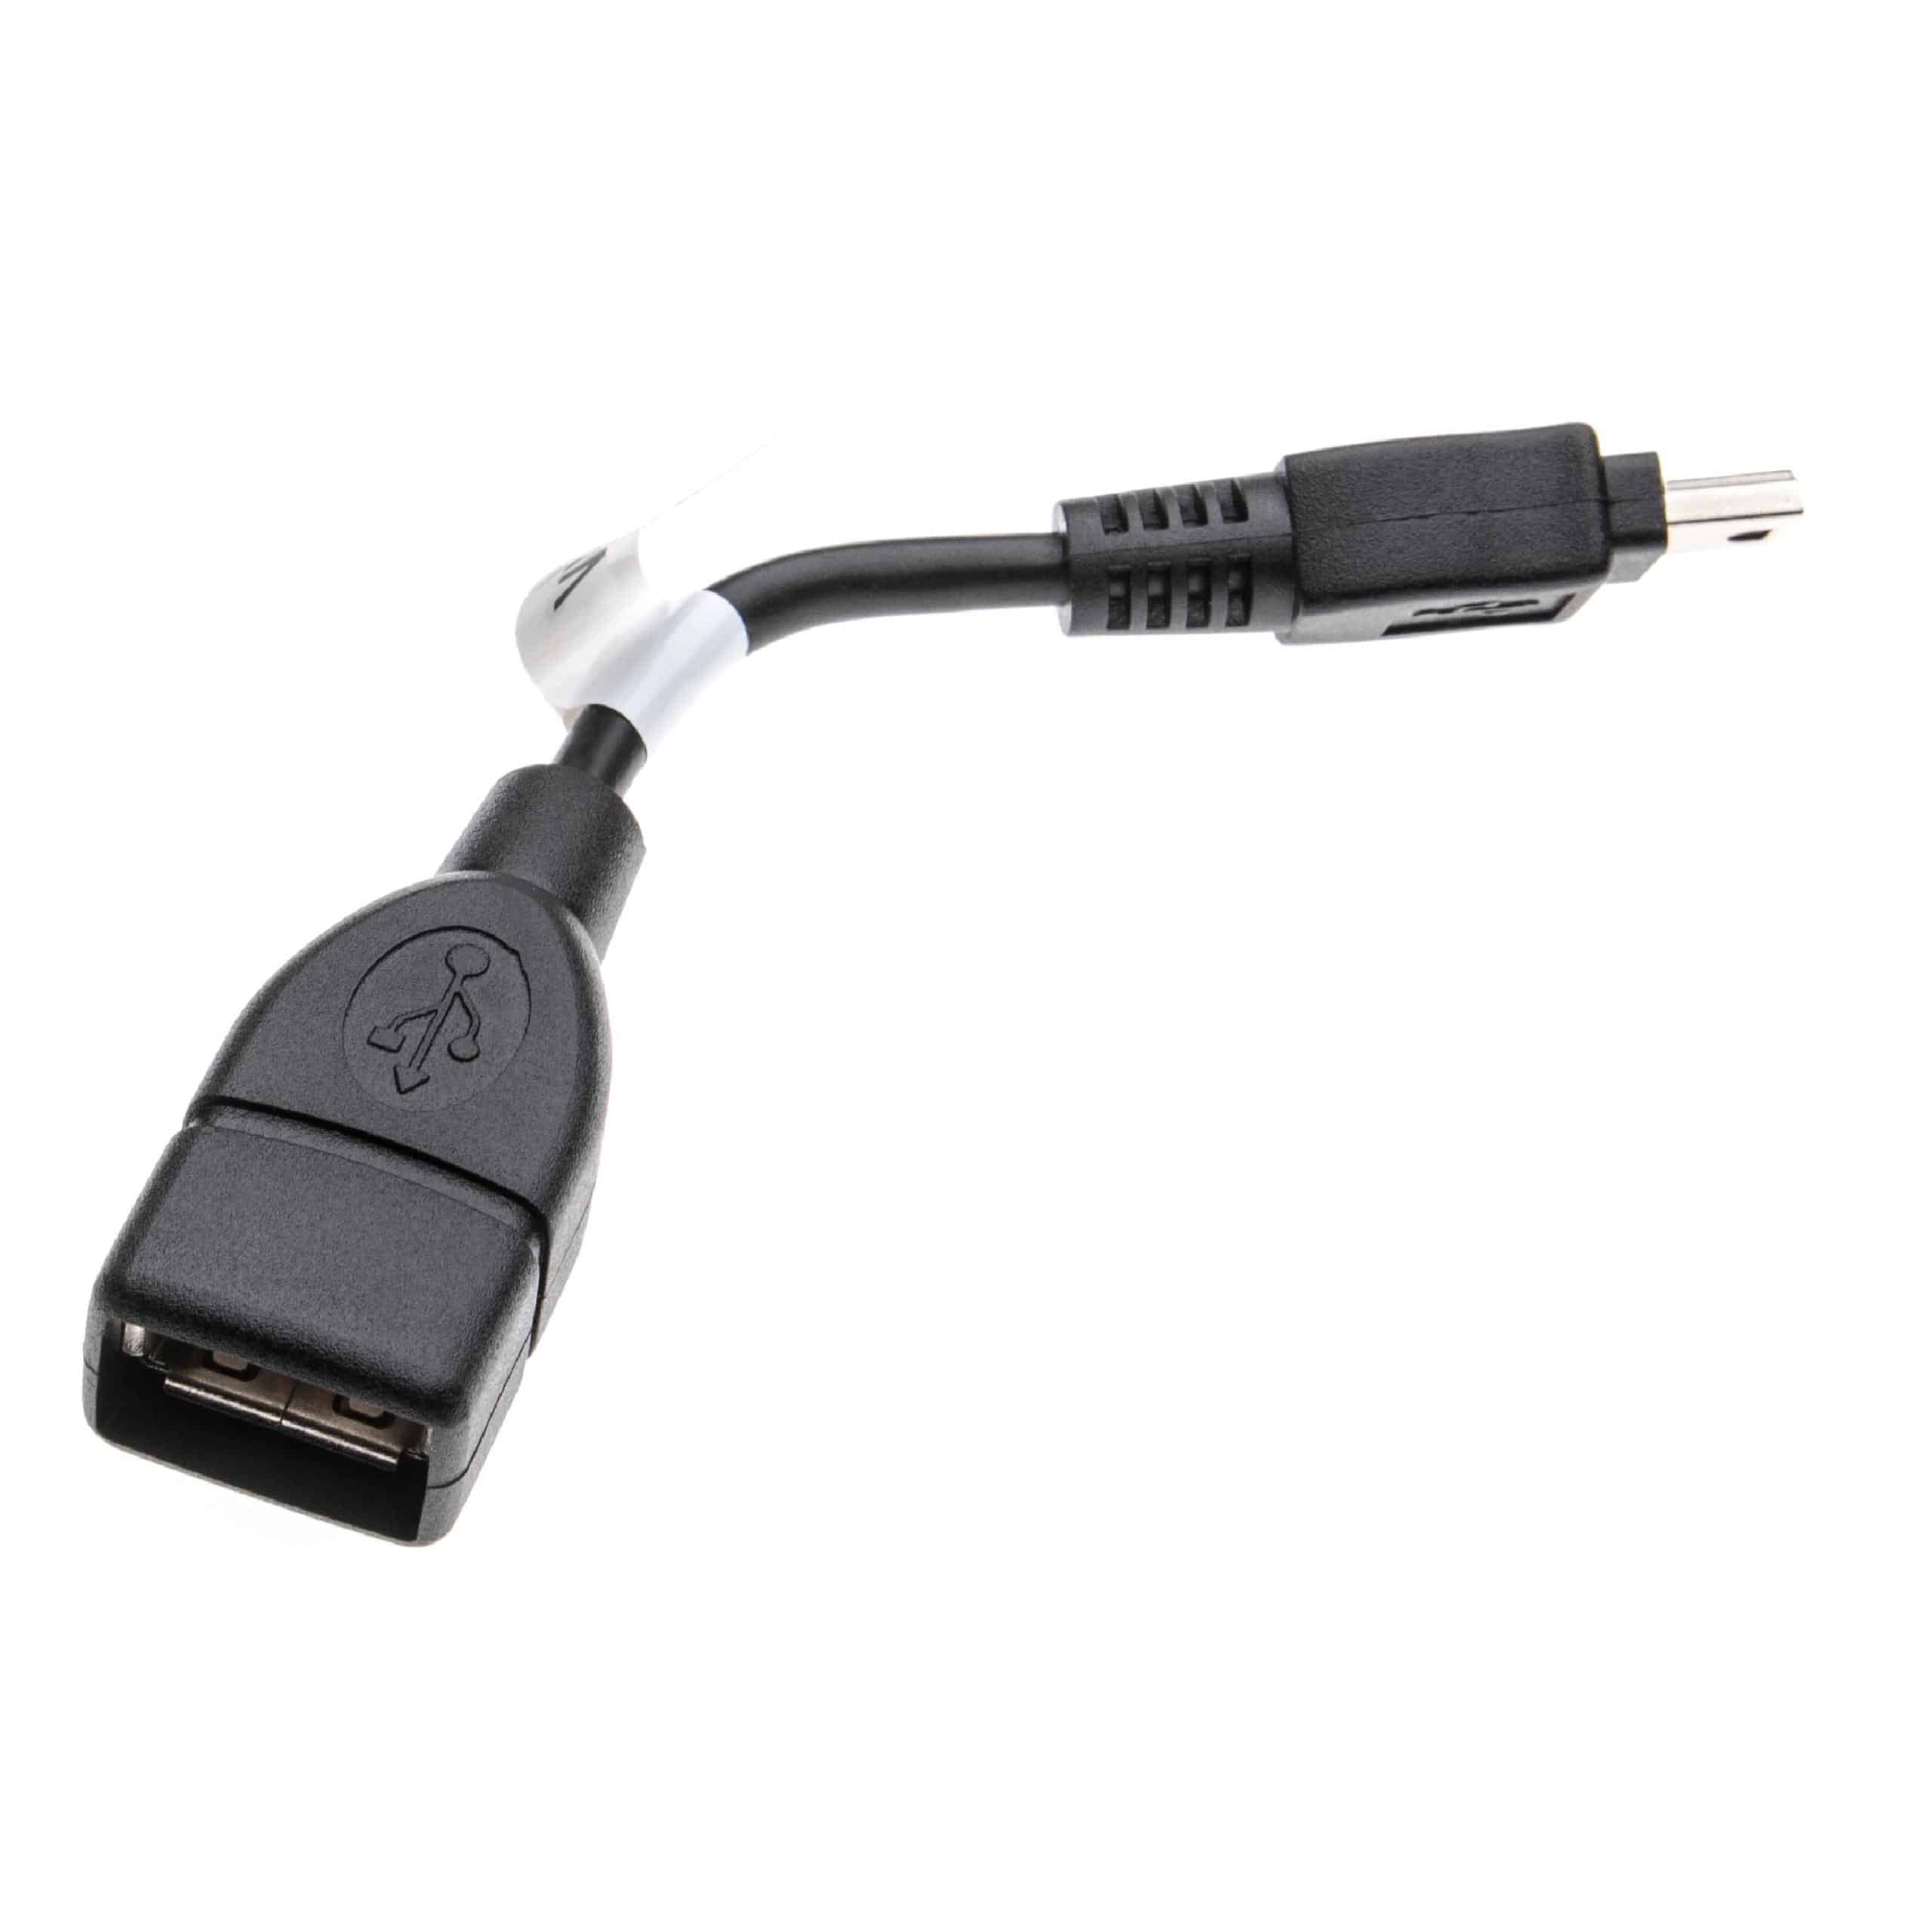 Adapter OTG Mini-USB (männlich) auf USB-A-Buchse für Smartphone, Tablet, Laptop, Notebook, PC